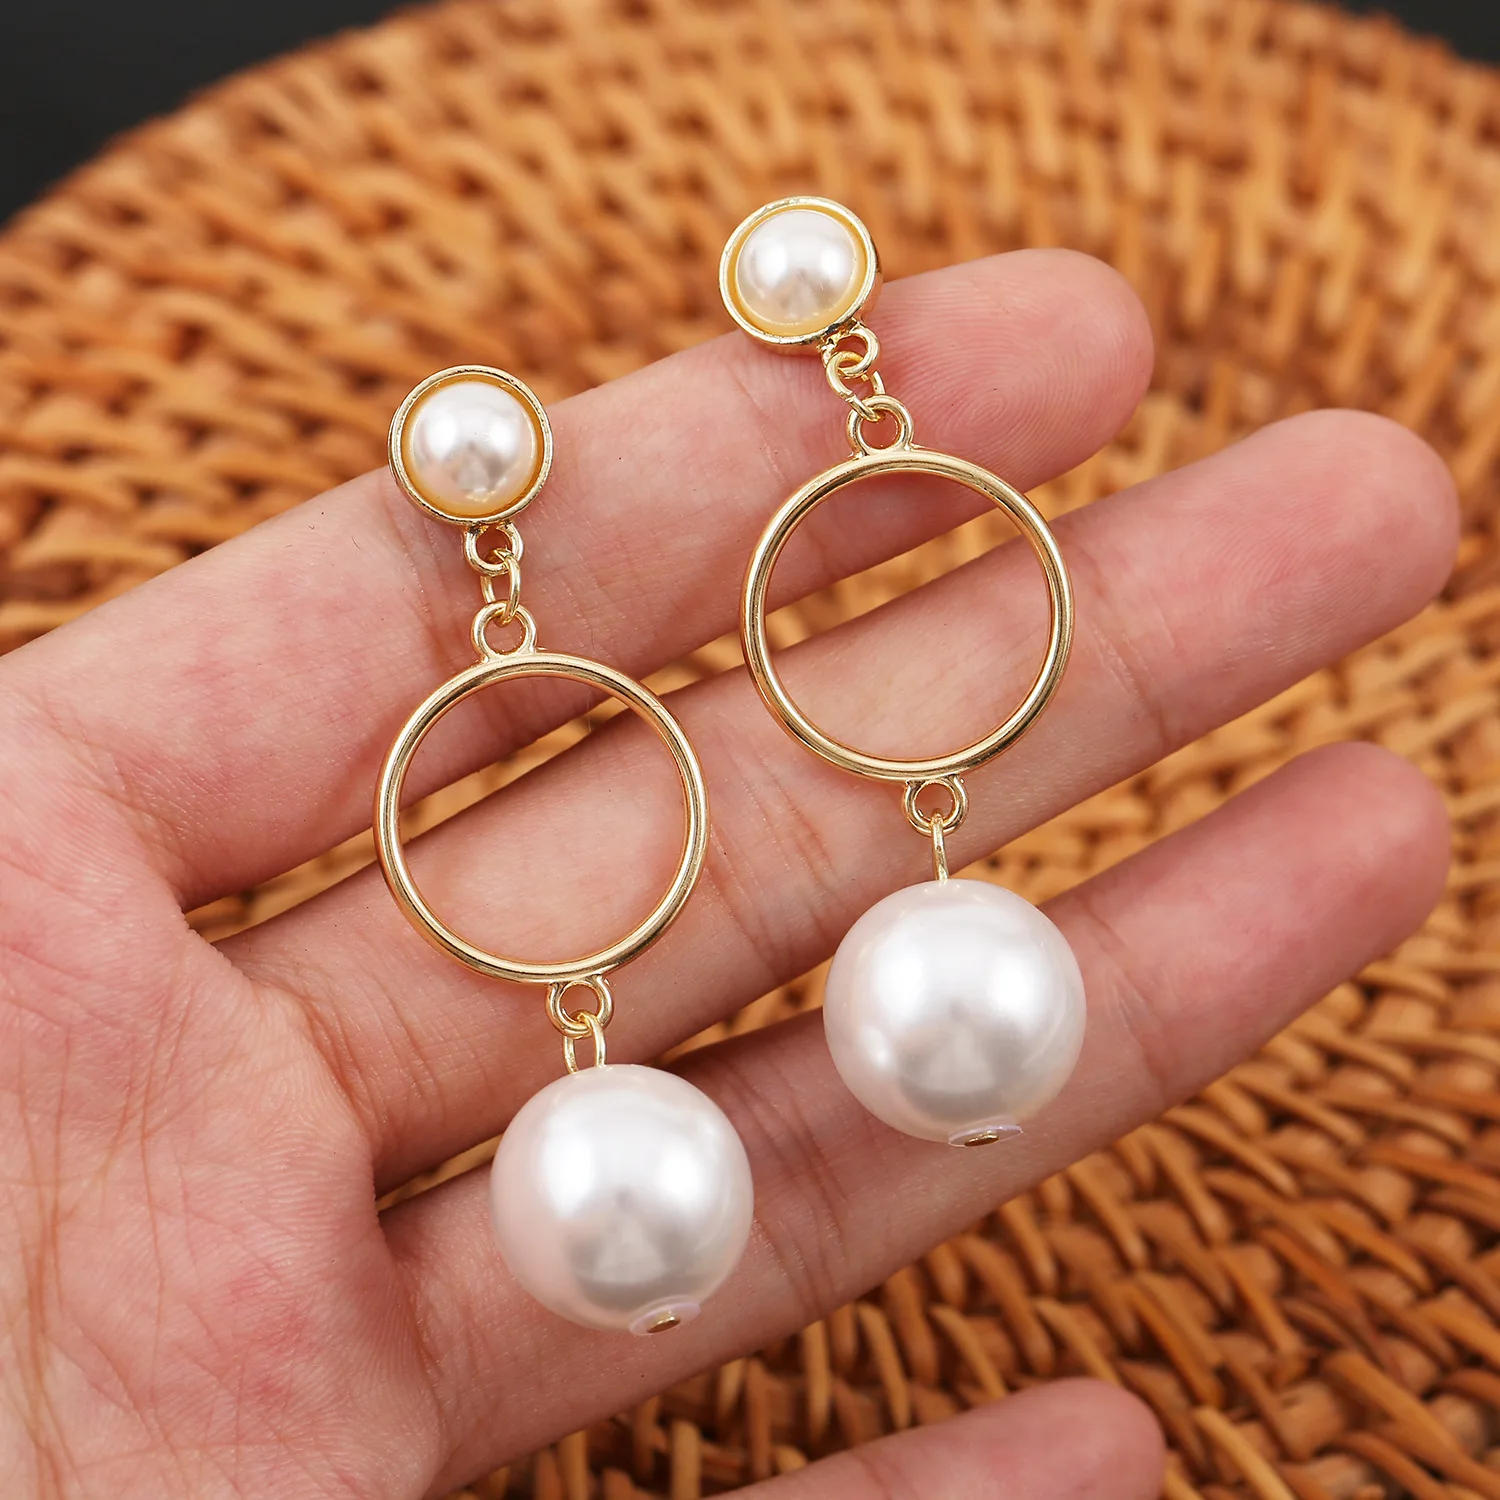 Vintage Baroque Pearl Earrings For Women Gold Plated Geometric Shaped Drop Earrings Dangle Ear Accerissice